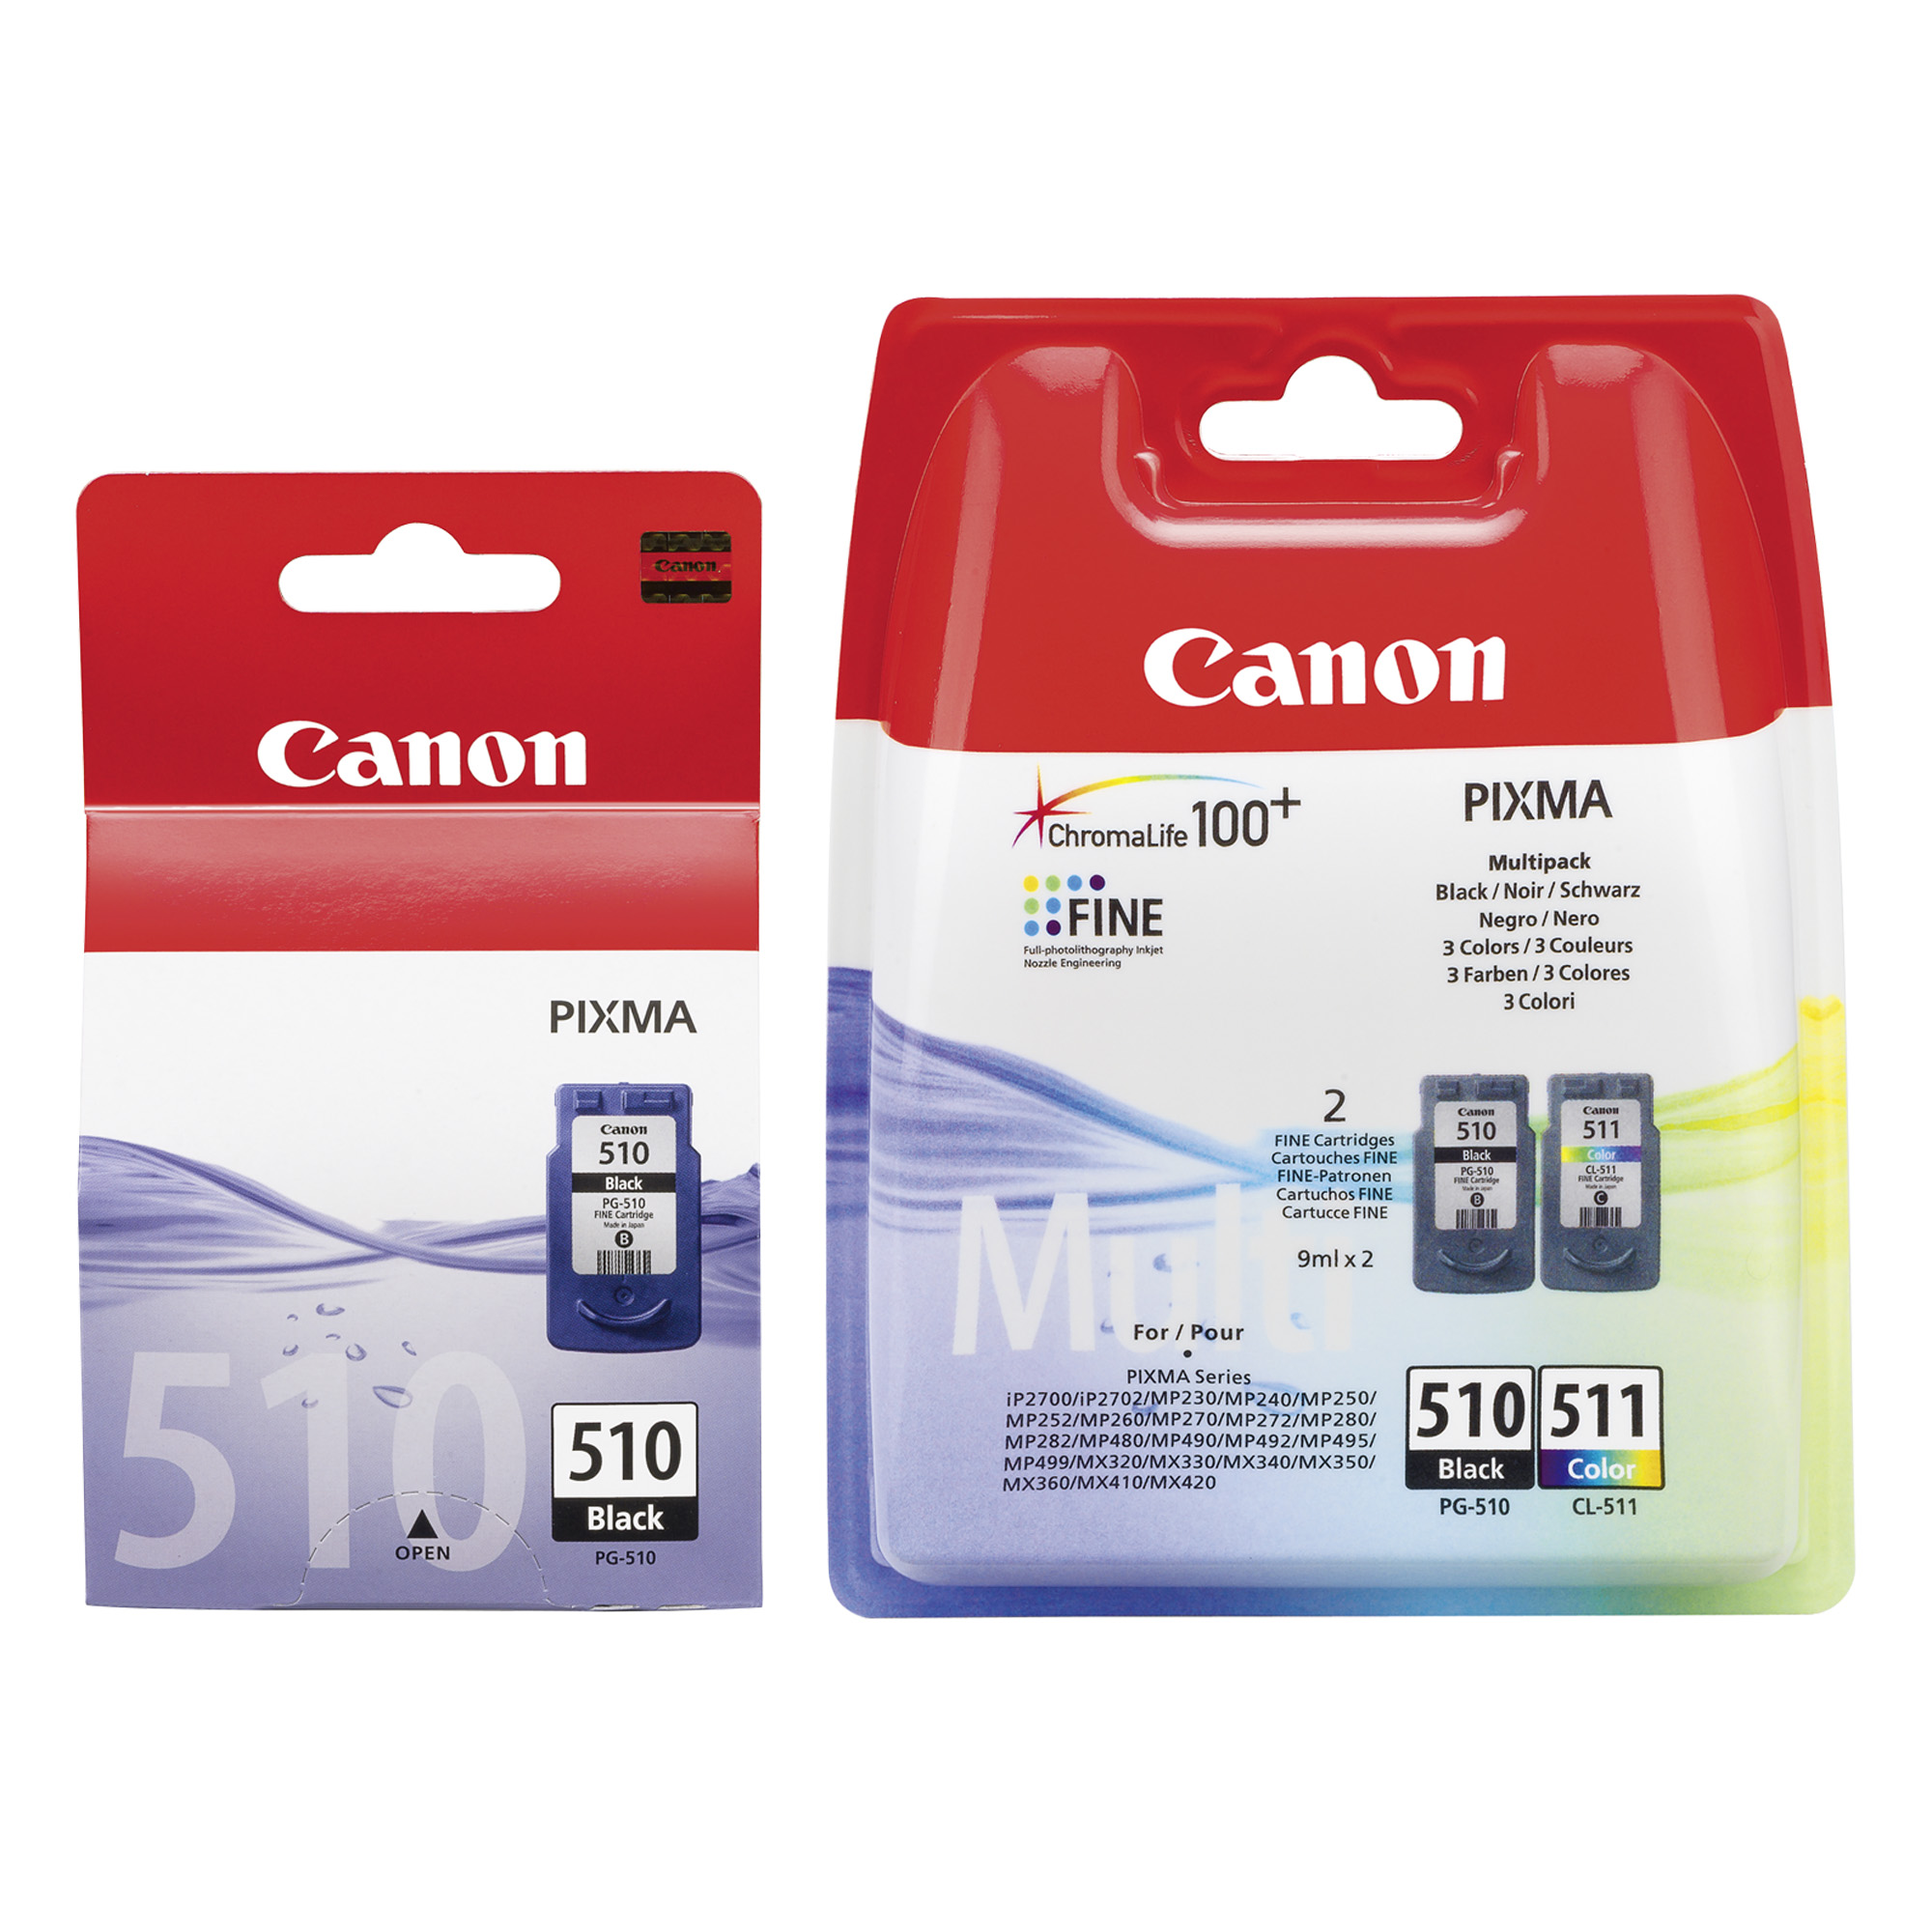 2x Cartouches d'encre pour Imprimante Canon Pixma MP270 - Noir+Tri-Colour